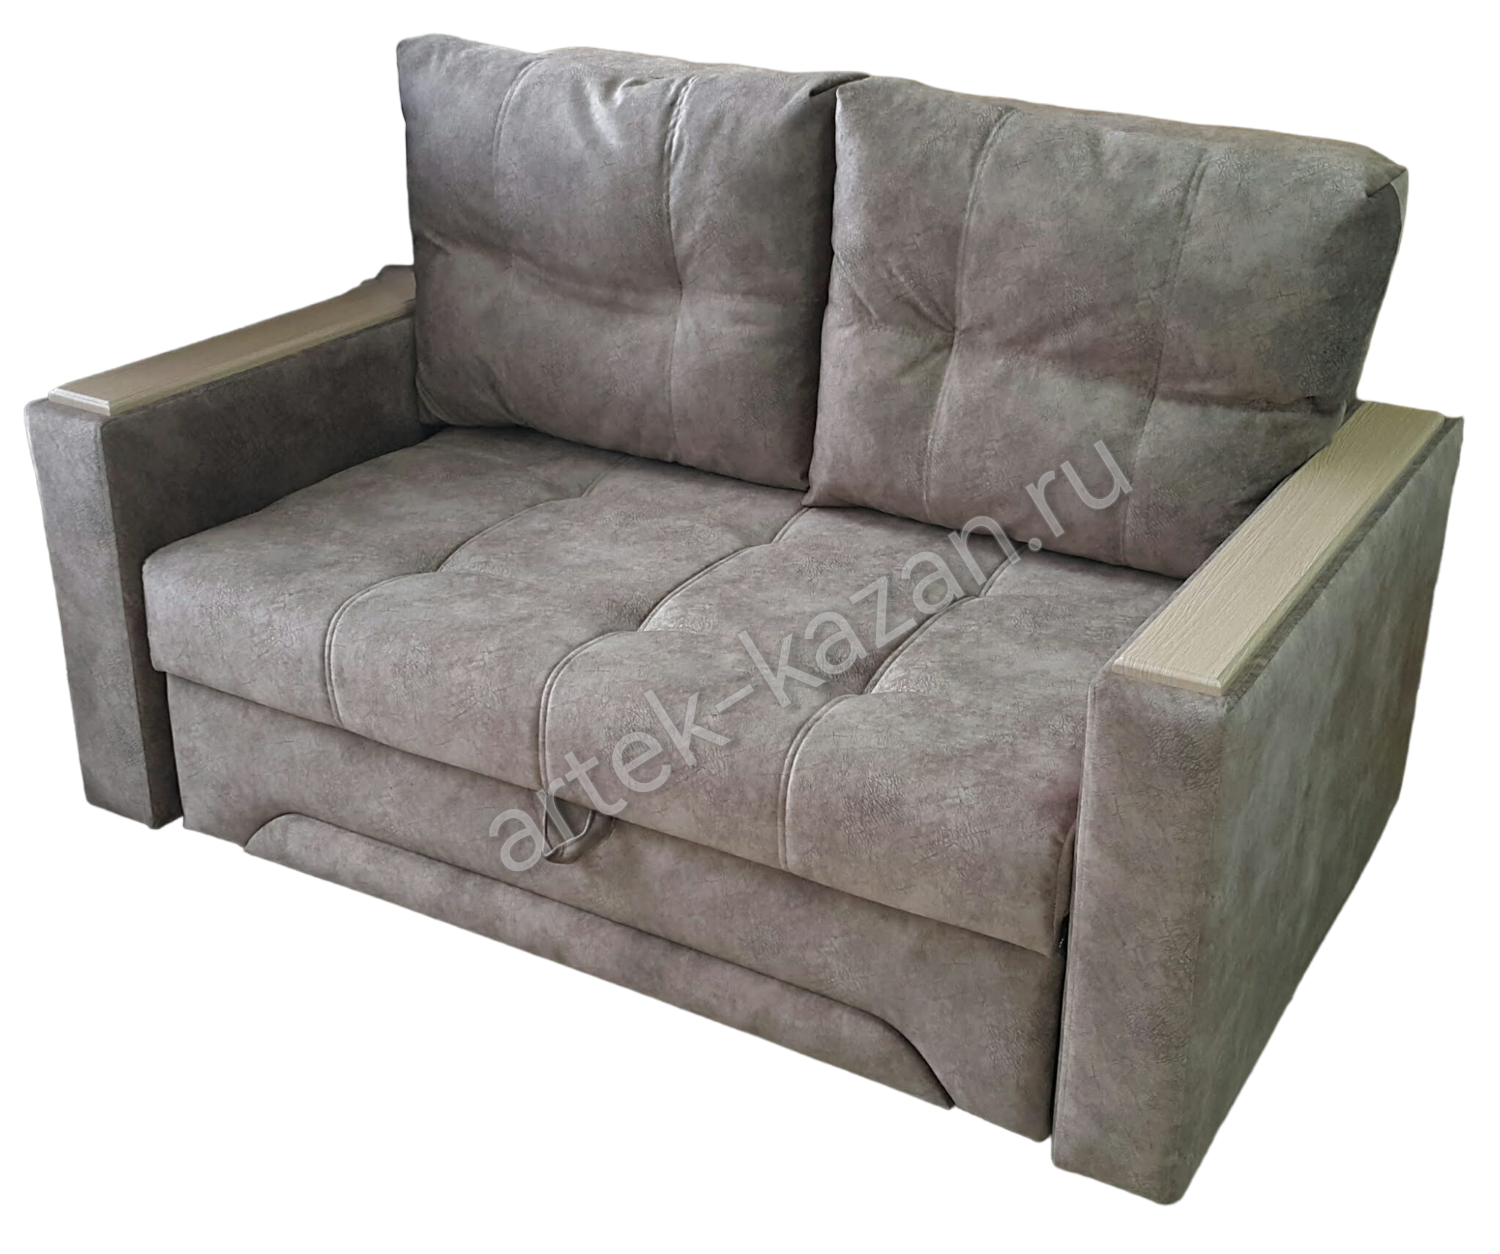 Мини диван на выкатном механизме Миник фото № 31. Купить недорогой диван по низкой цене от производителя можно у нас.